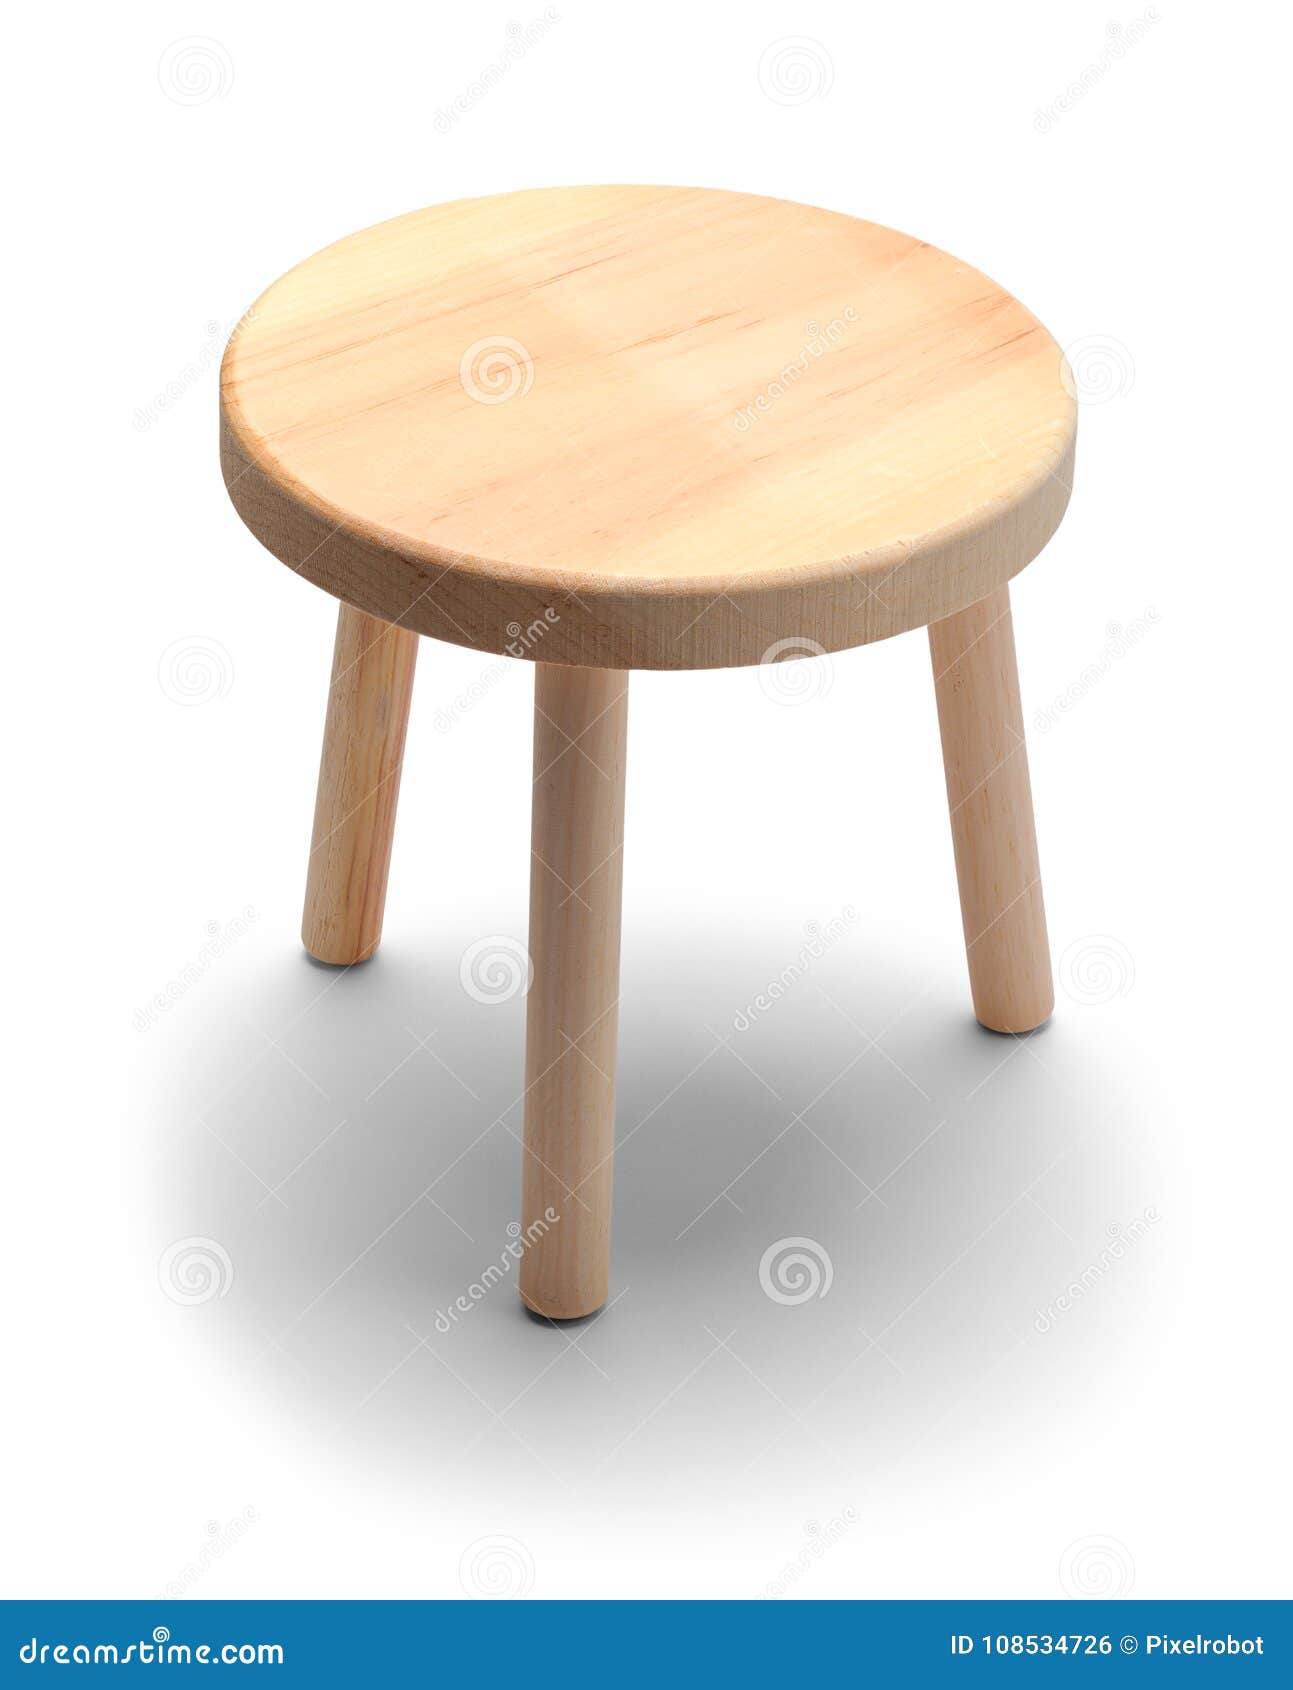 foot stool